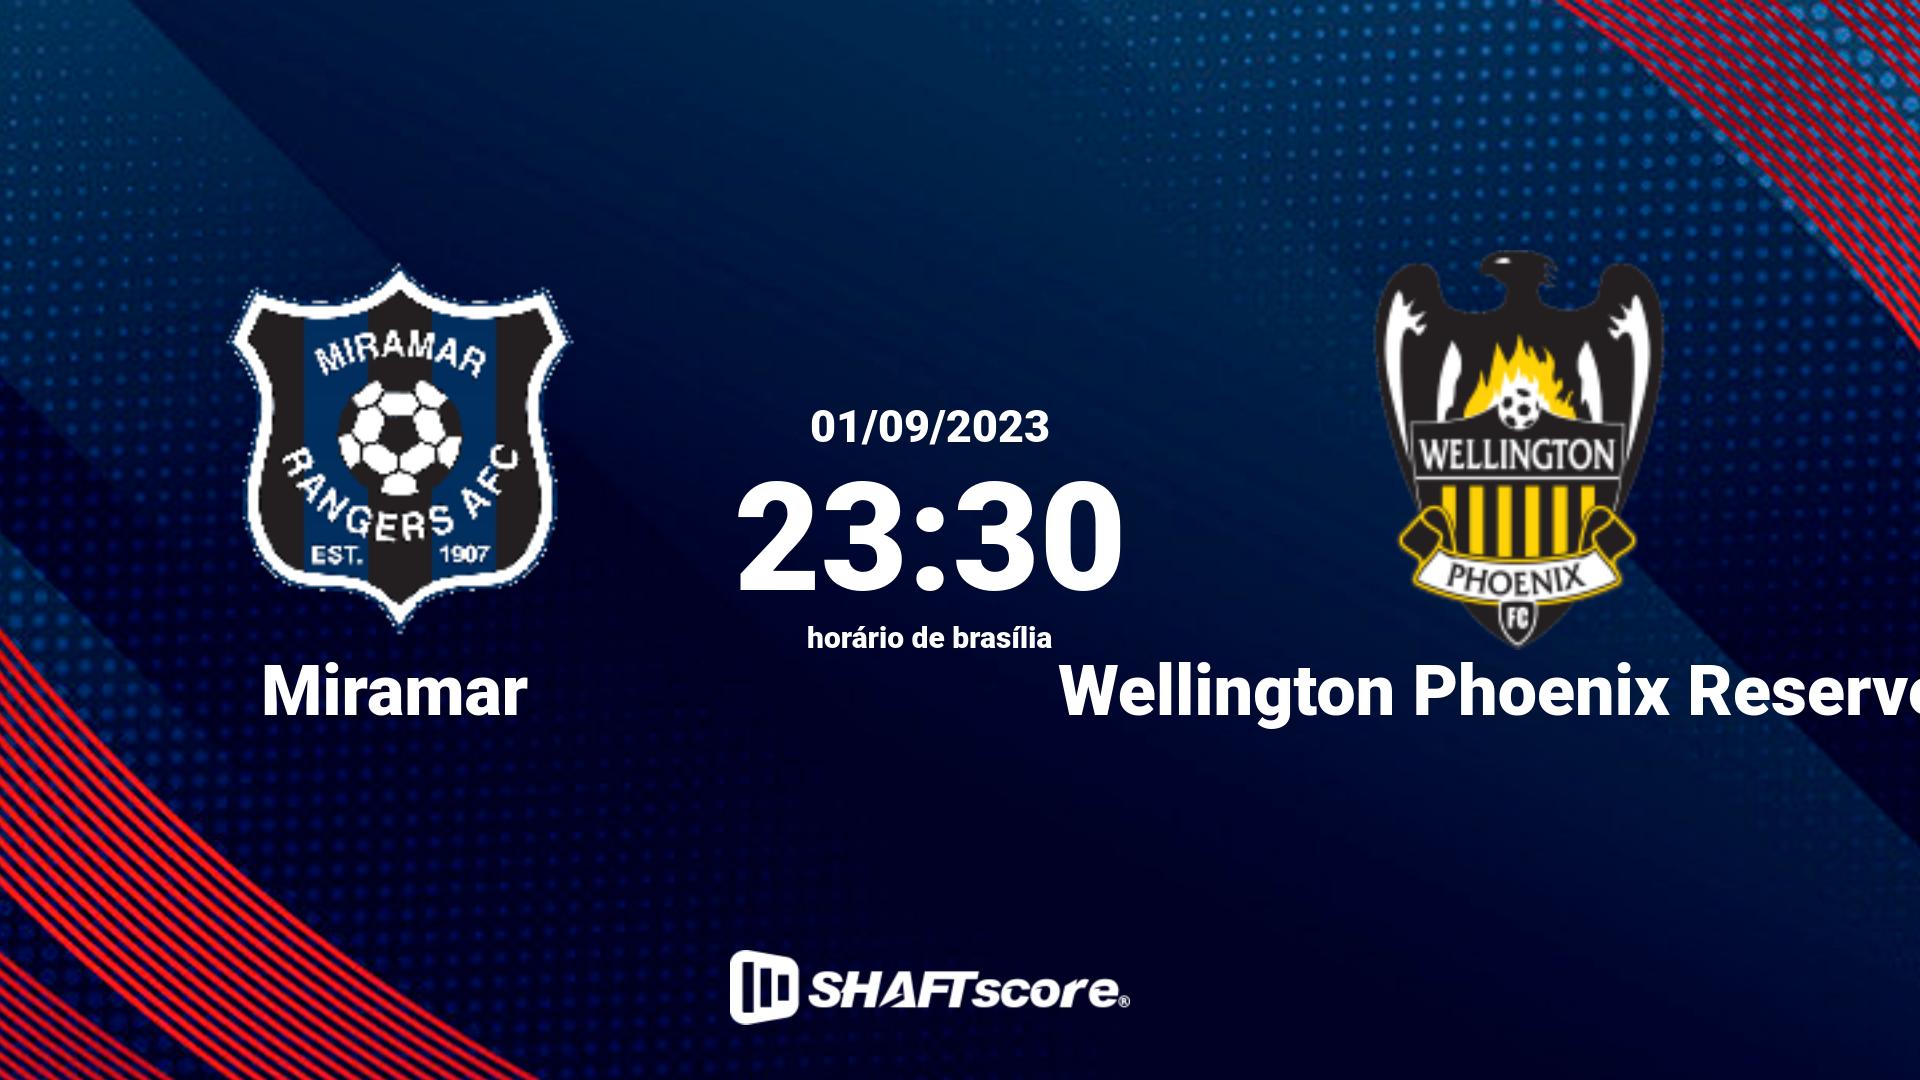 Estatísticas do jogo Miramar vs Wellington Phoenix Reserves 01.09 23:30